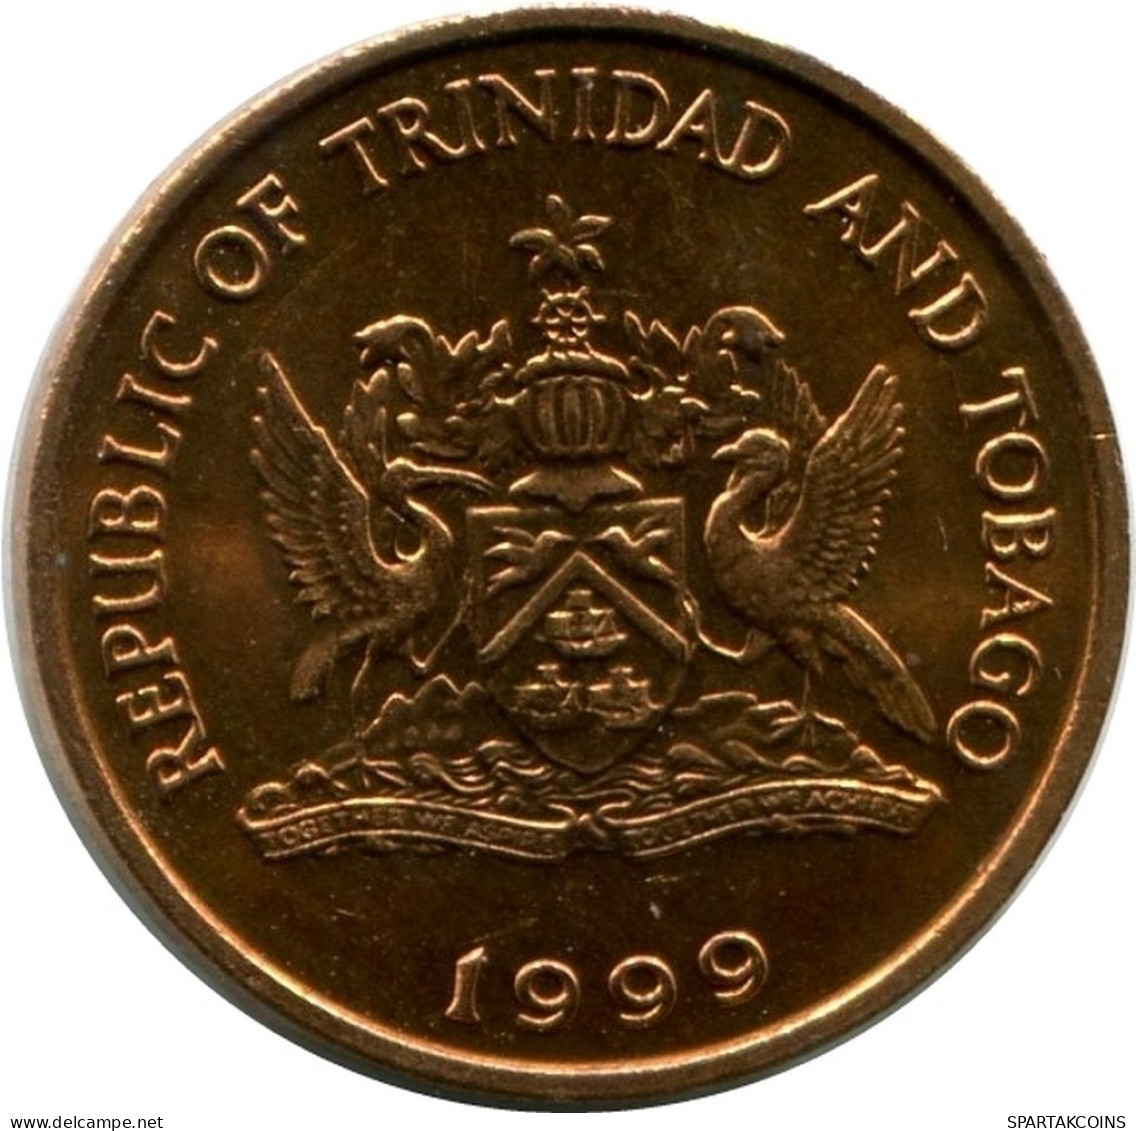 1 CENT 1999 TRINIDAD & TOBAGO UNC Hummingbird Münze #M10357.D.A - Trindad & Tobago